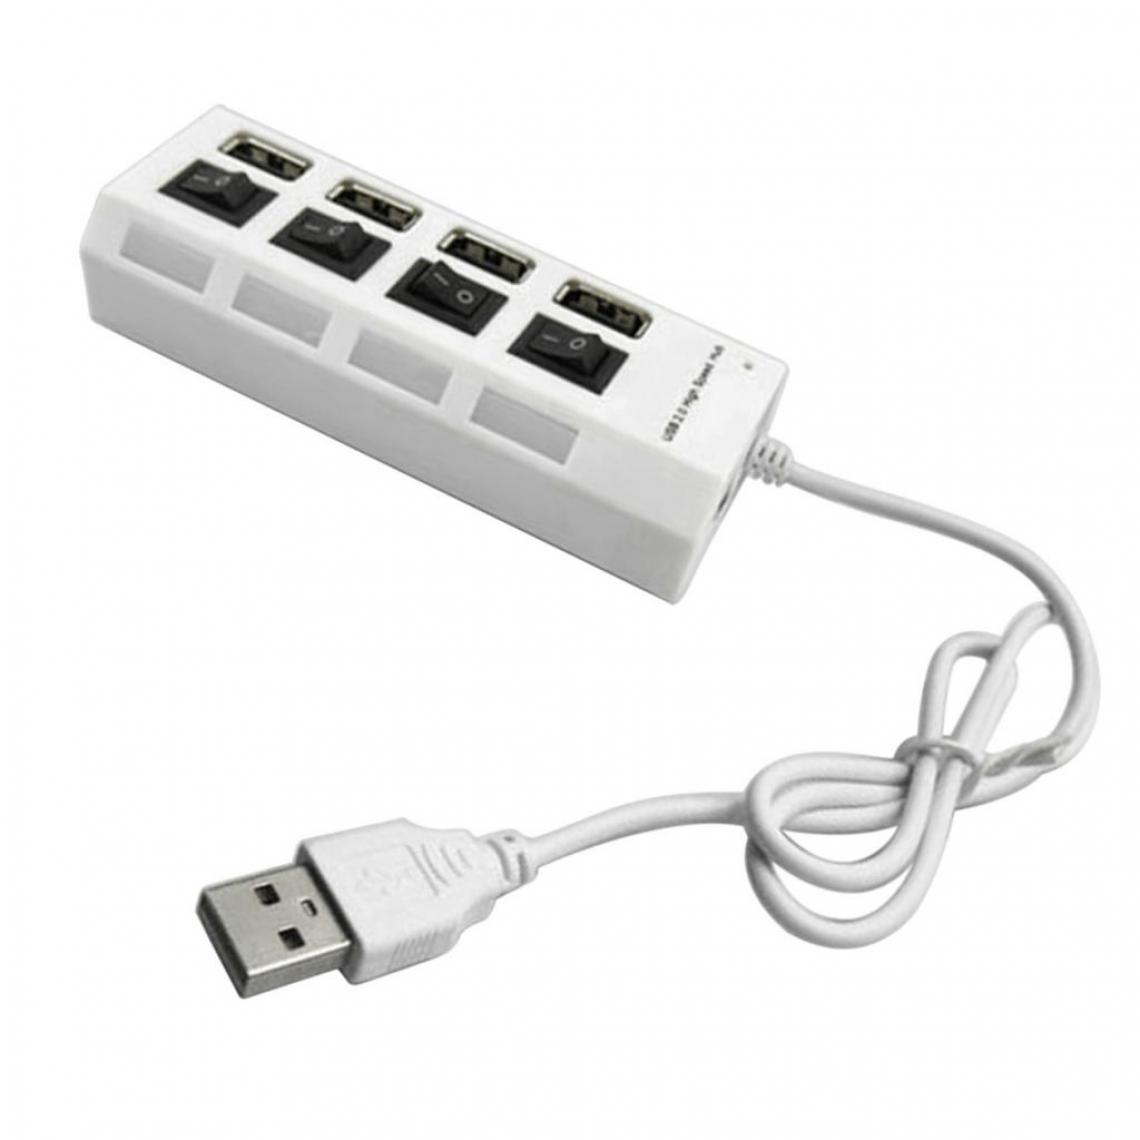 marque generique - Chargeur Multifonction USB 2.0 4 Ports + Interrupteur ON / OFF Pour Adaptateur Haute Vitesse, Blanc - Hub